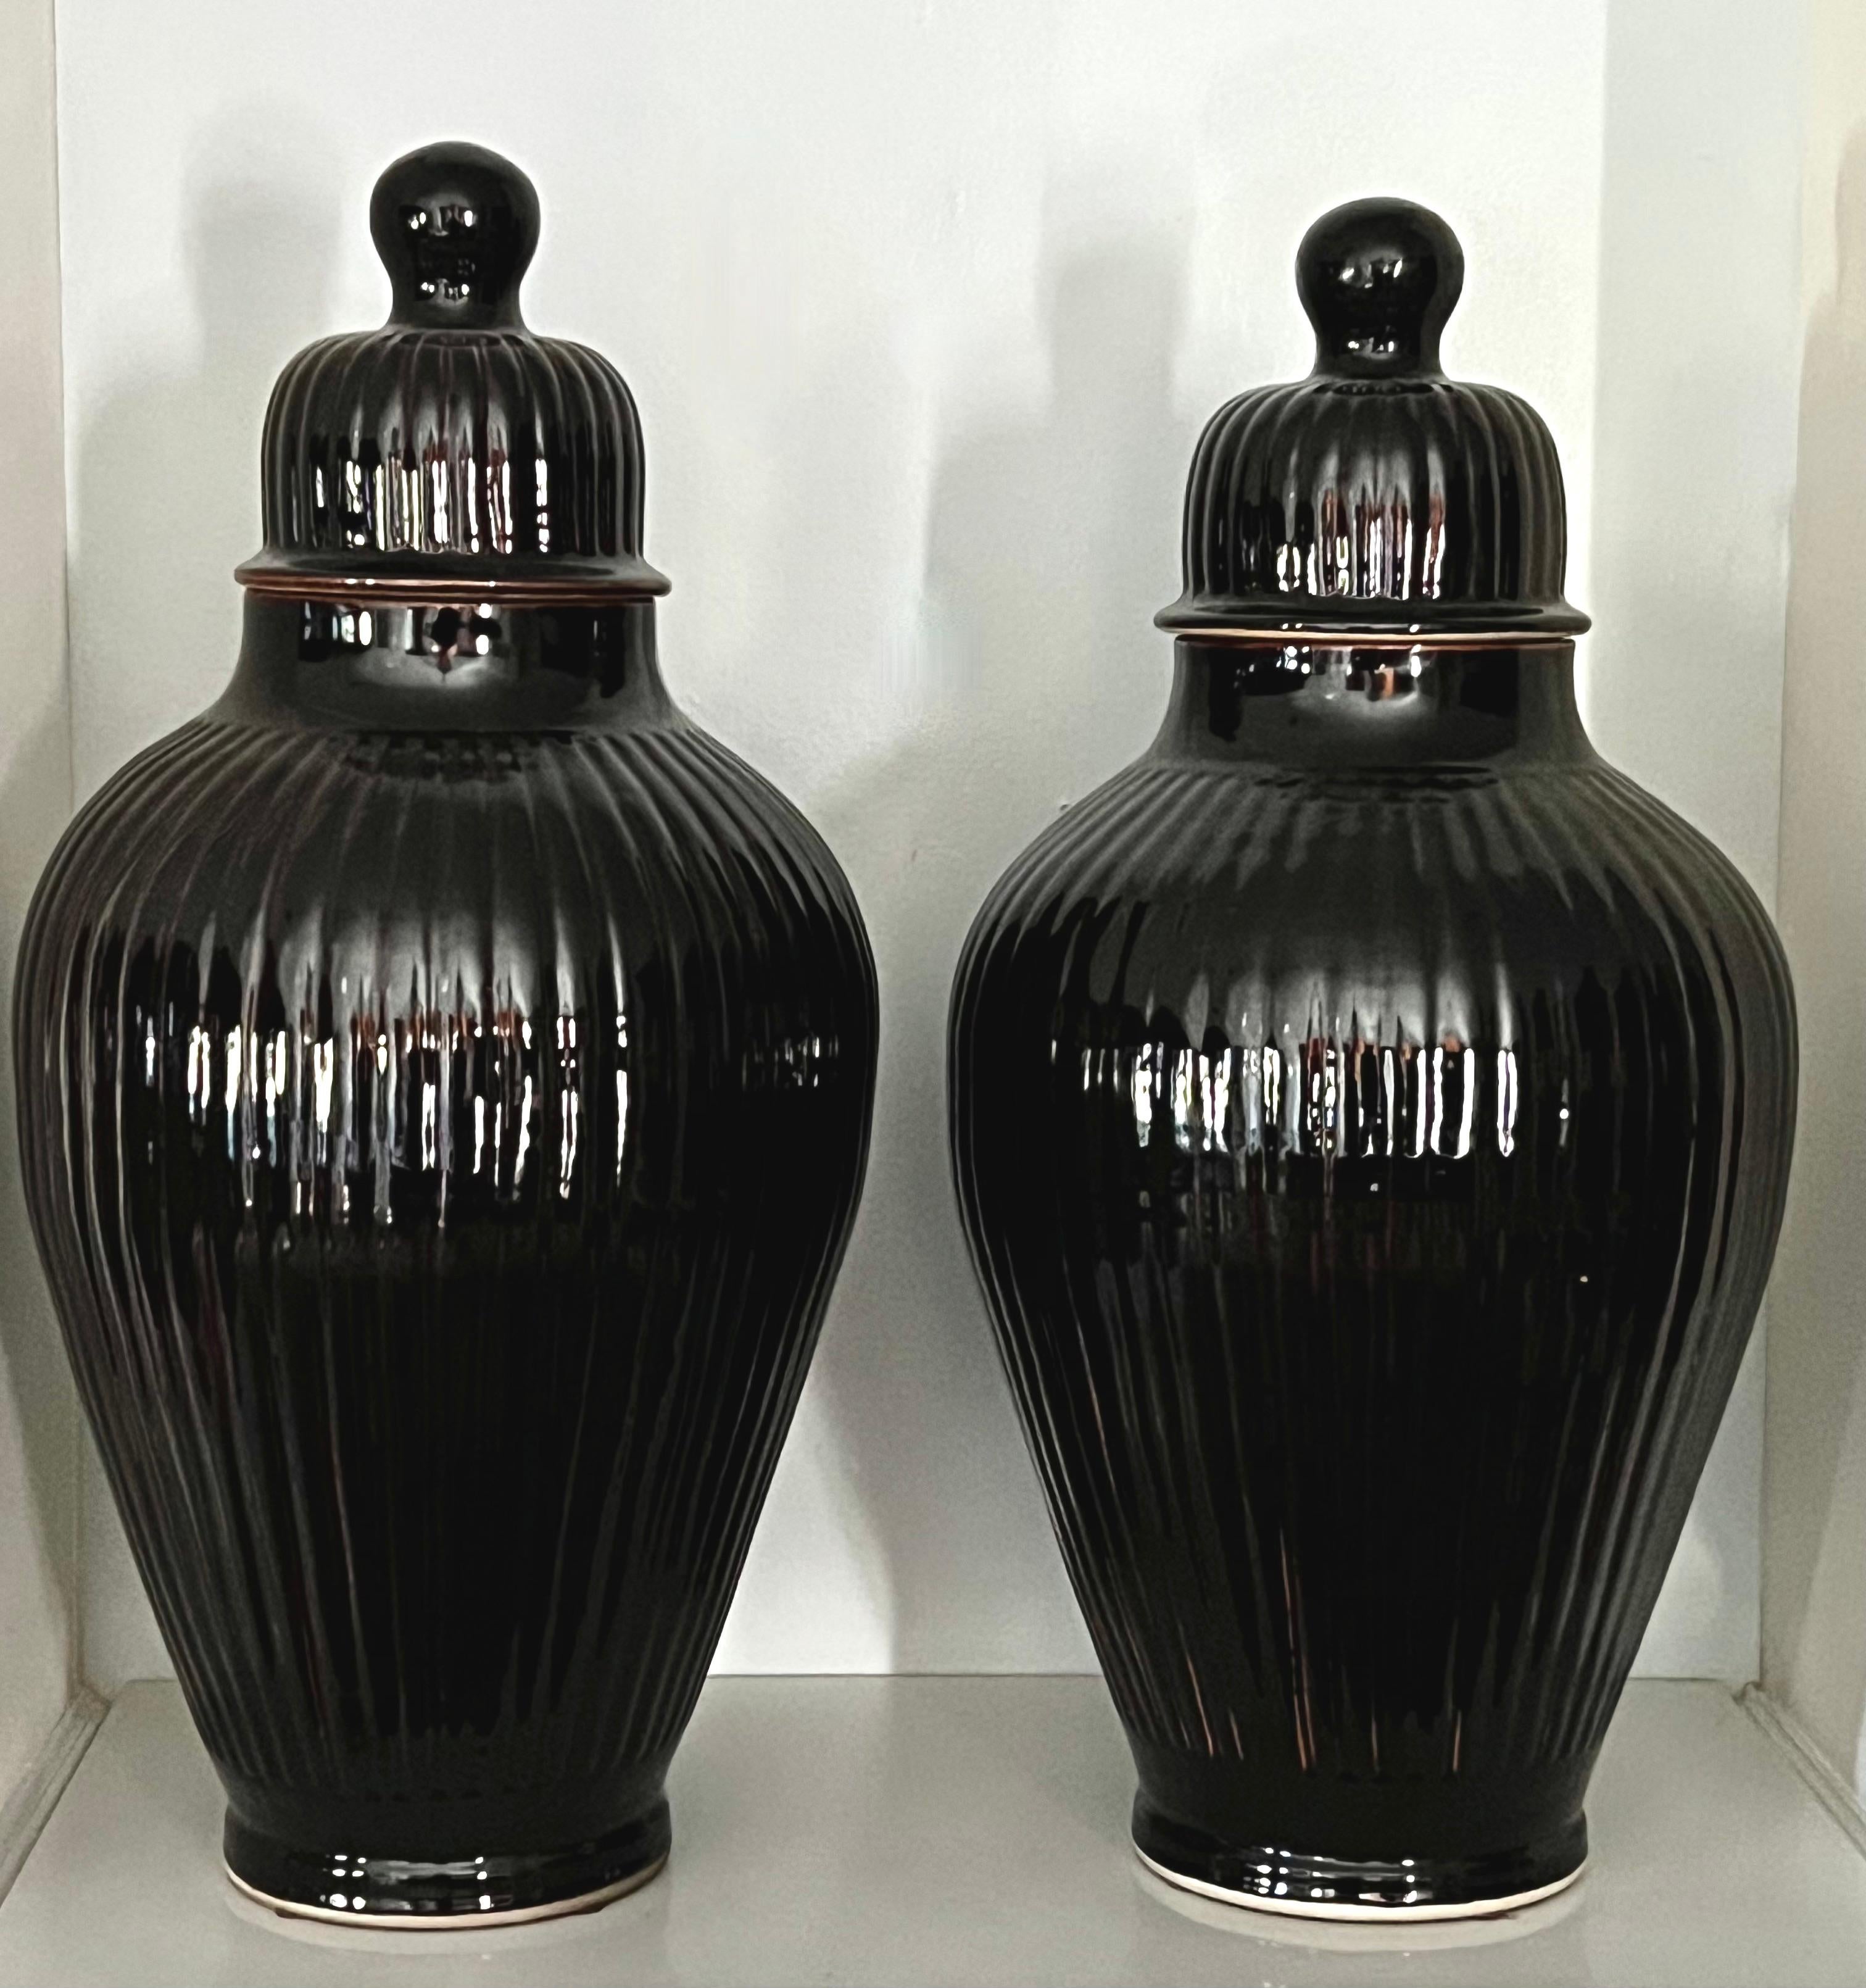 20th Century Pair of Italian Glazed Ceramic Ginger Jar Lidded Urns For Sale